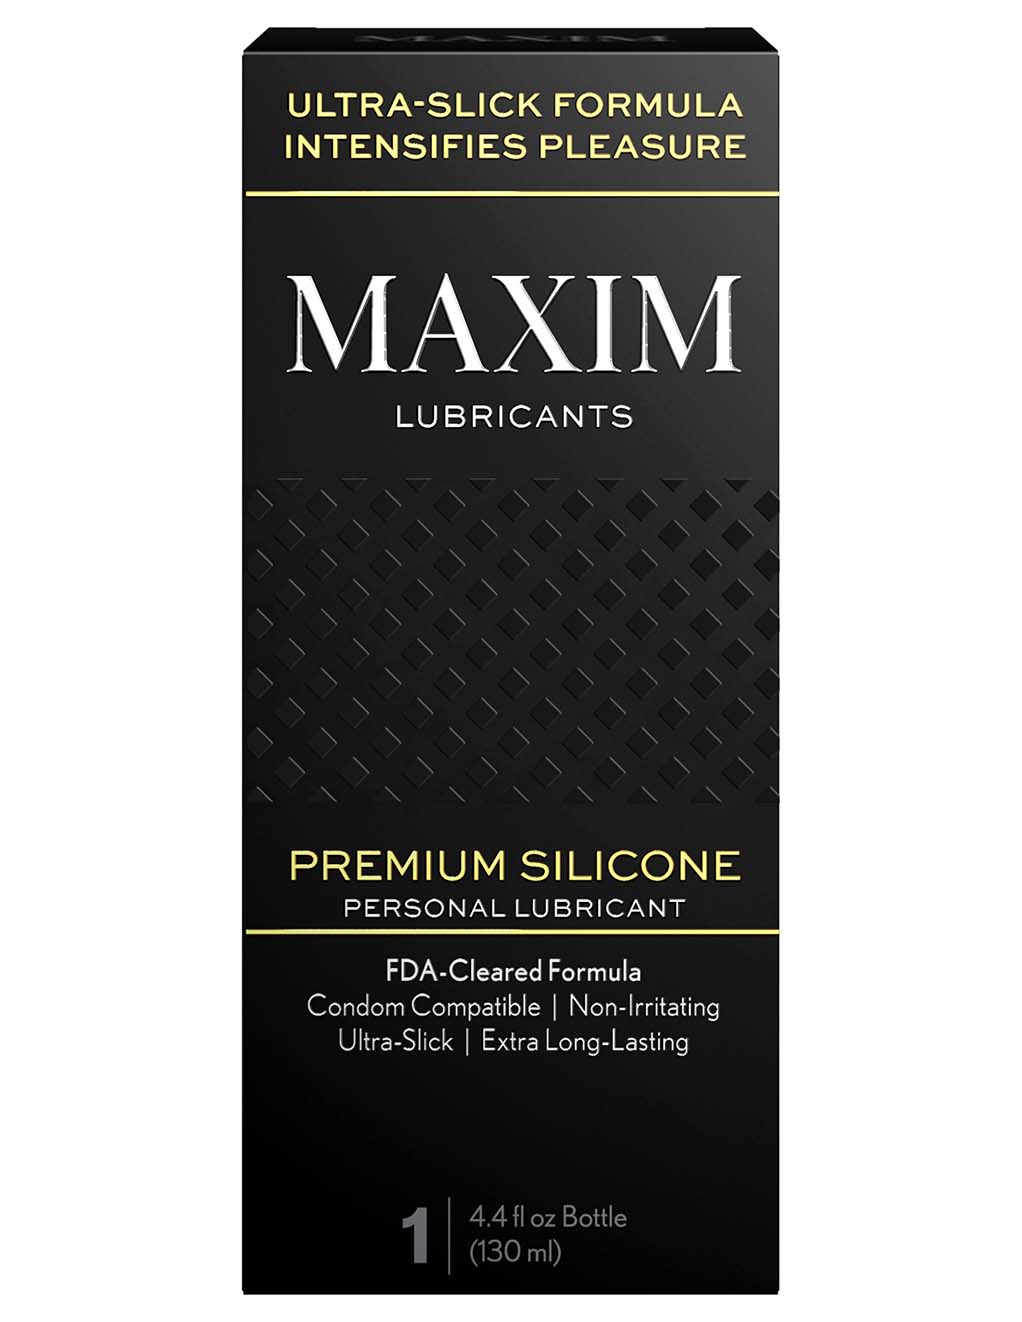 MAXIM Pure Silicone Lubricant- Box Front